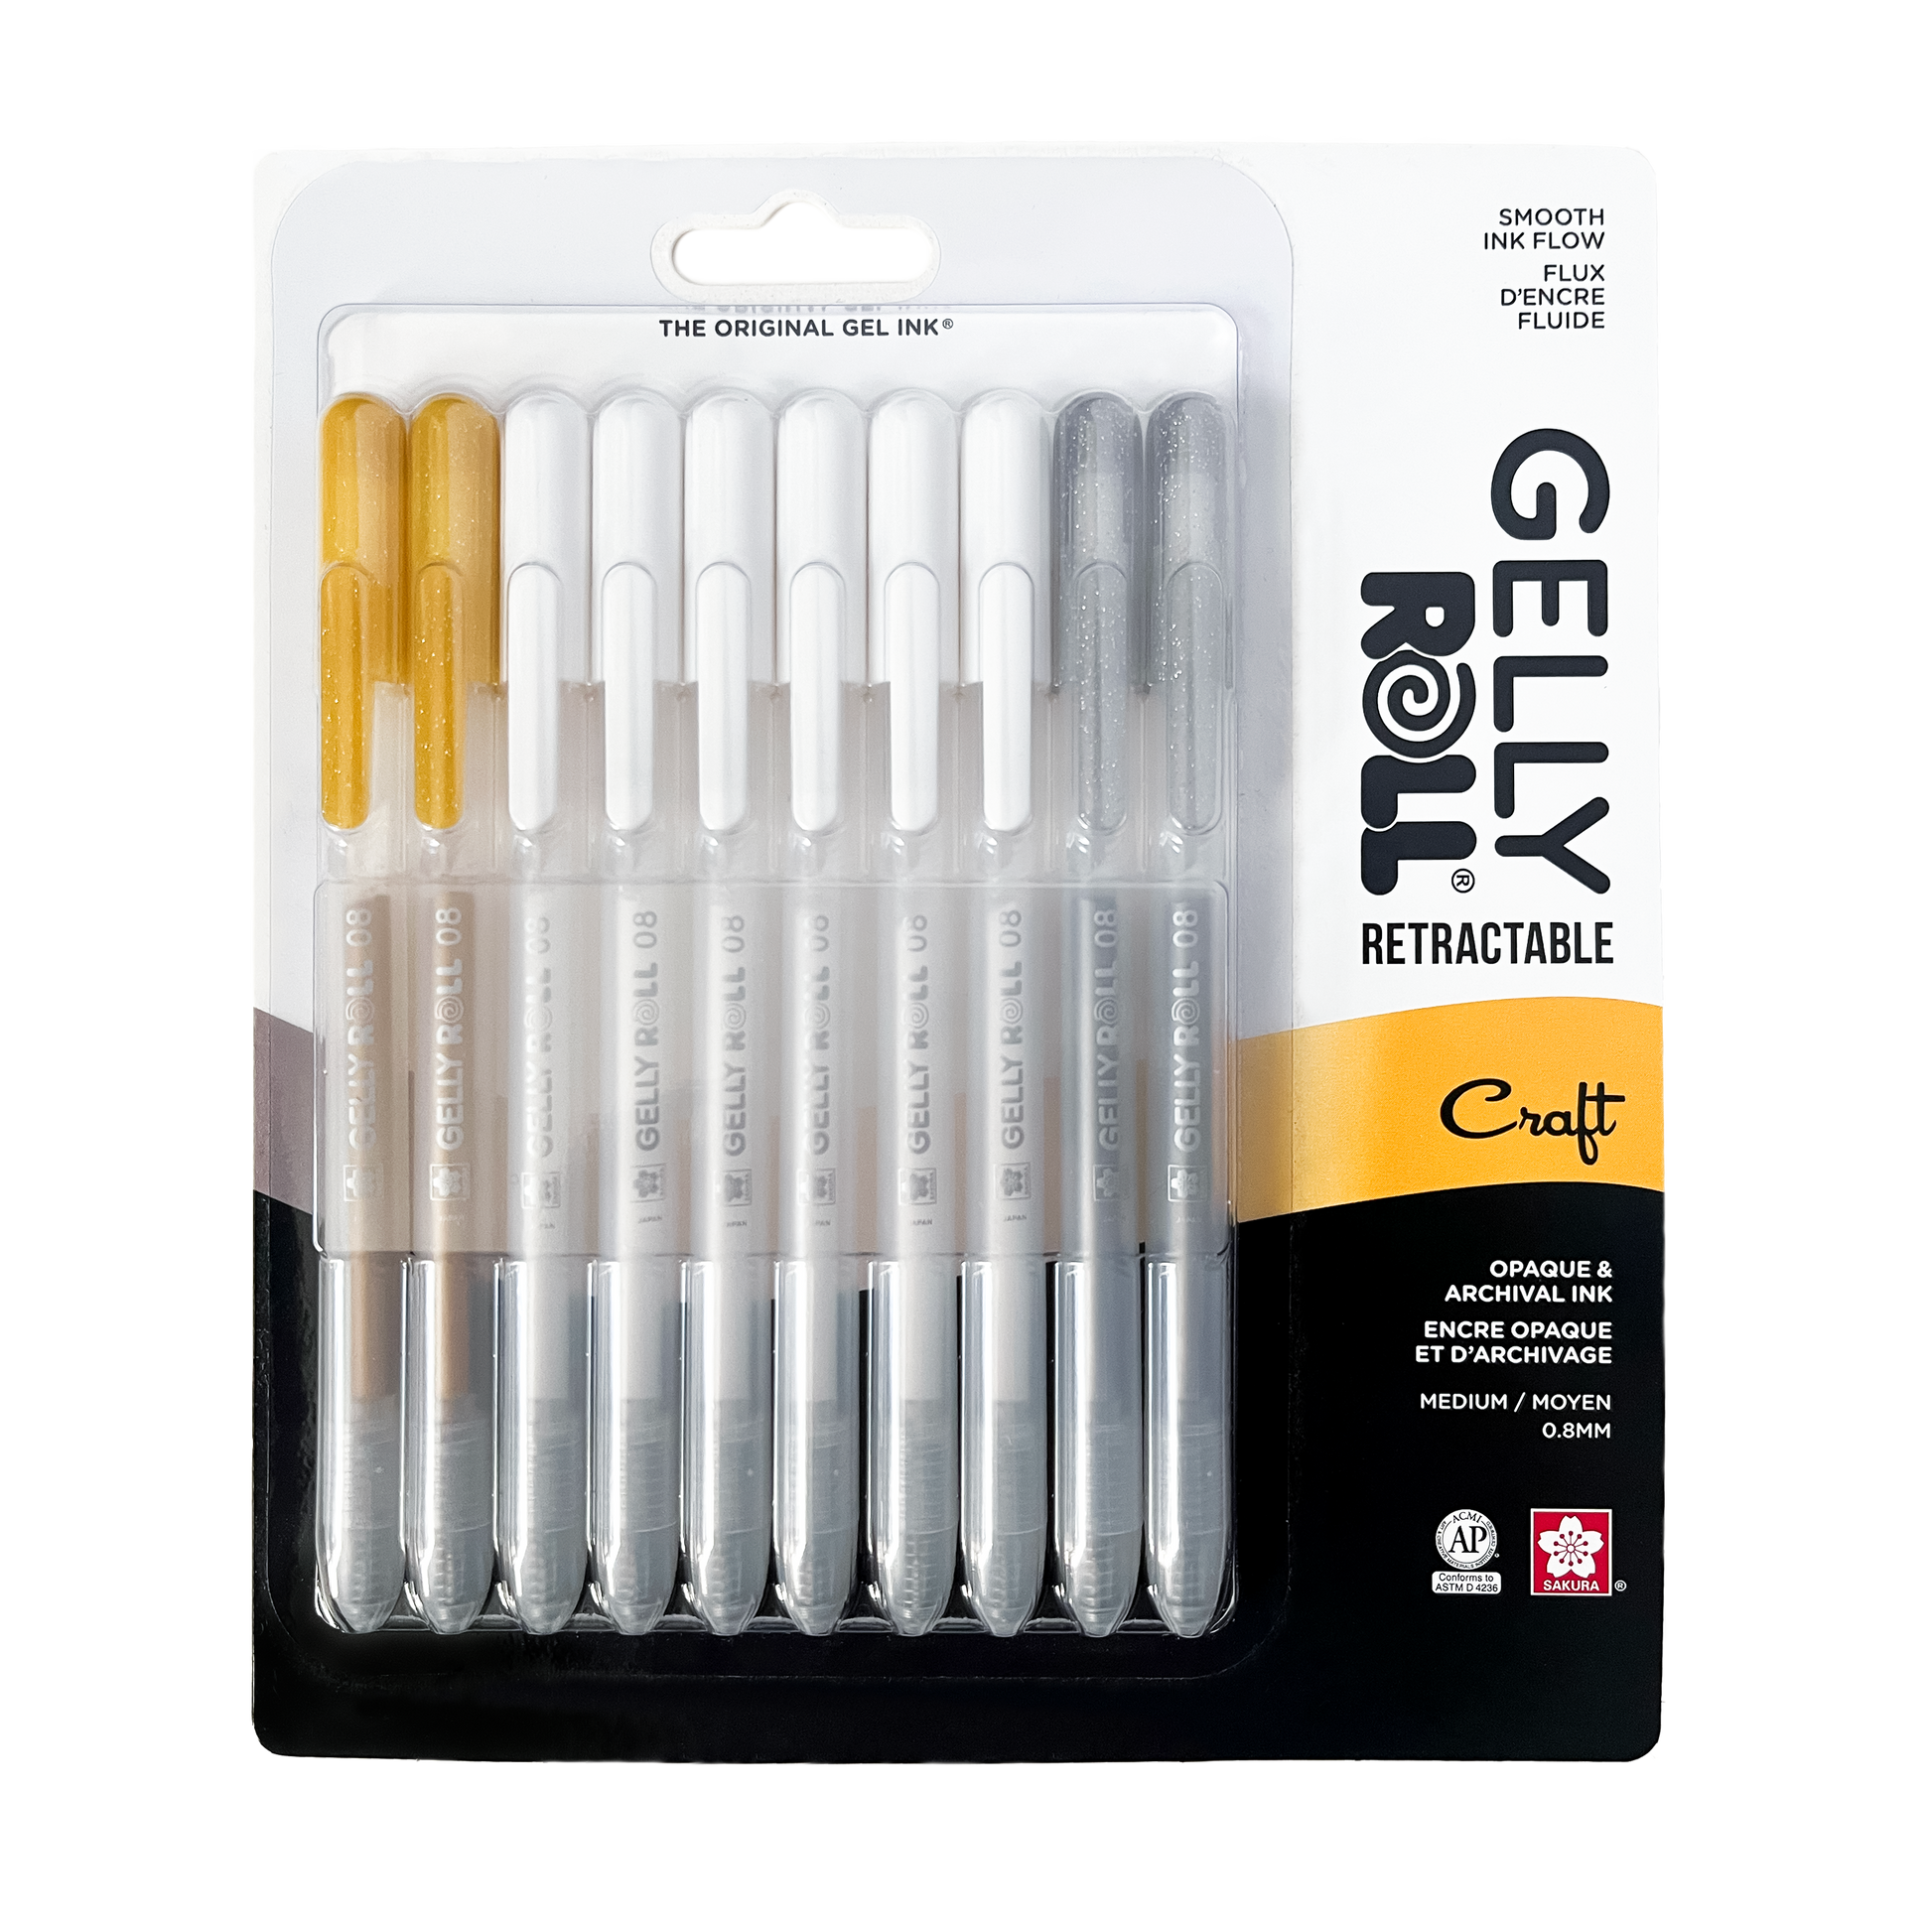 Gelly Roll Pen (White)